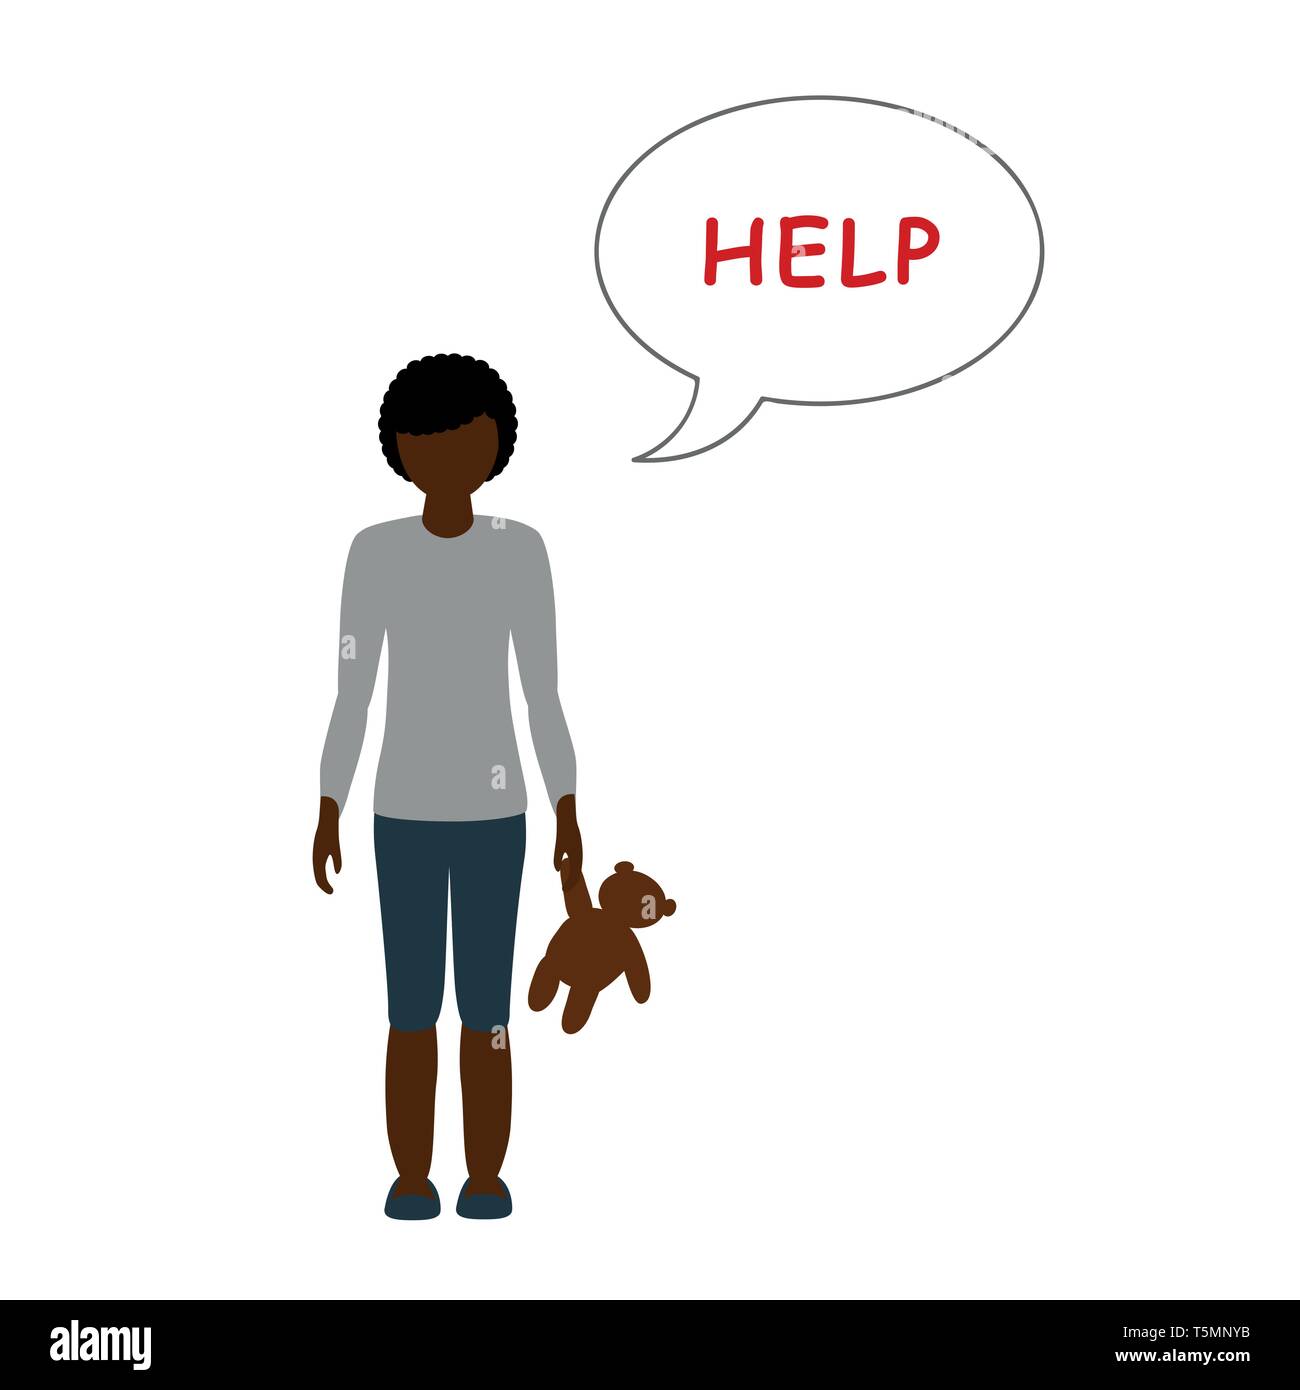 little girl with a teddy bear need help vector illustration EPS10 Stock Vector